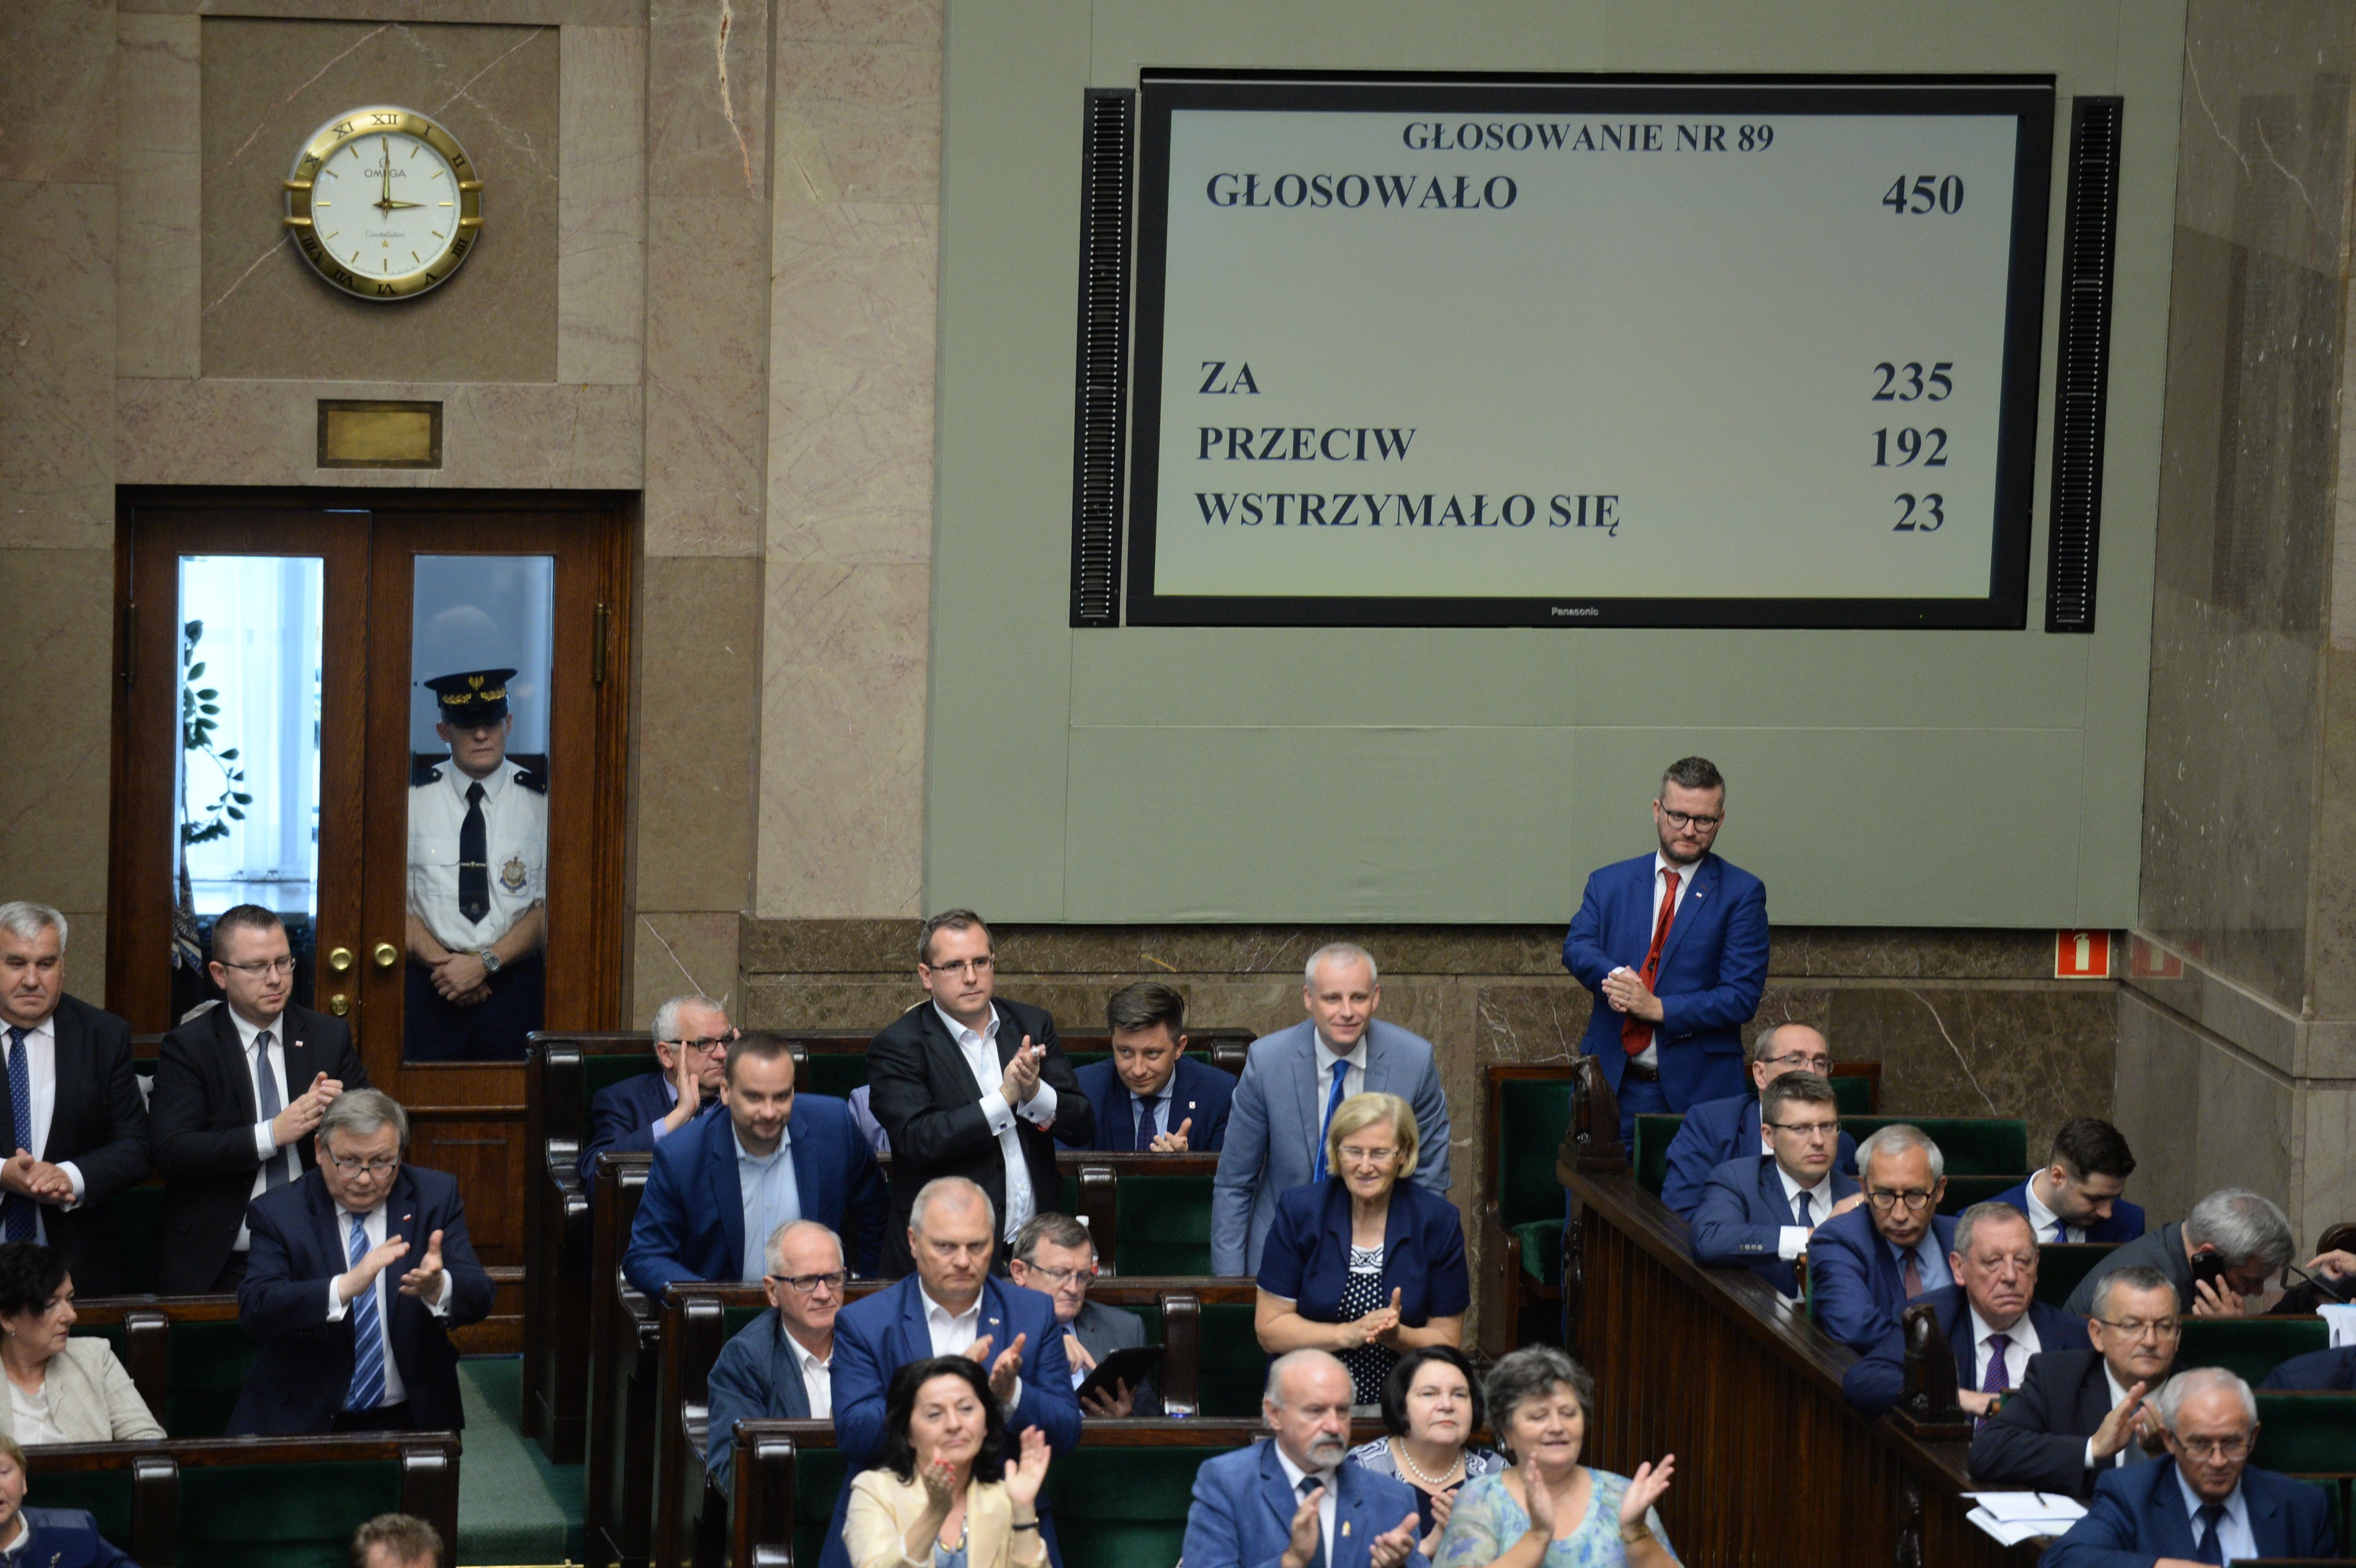 Πολωνική κρίση: «Πρέπει να μιλήσουμε» λέει η ΕΕ - Υποστηρίζει η Ουγγαρία